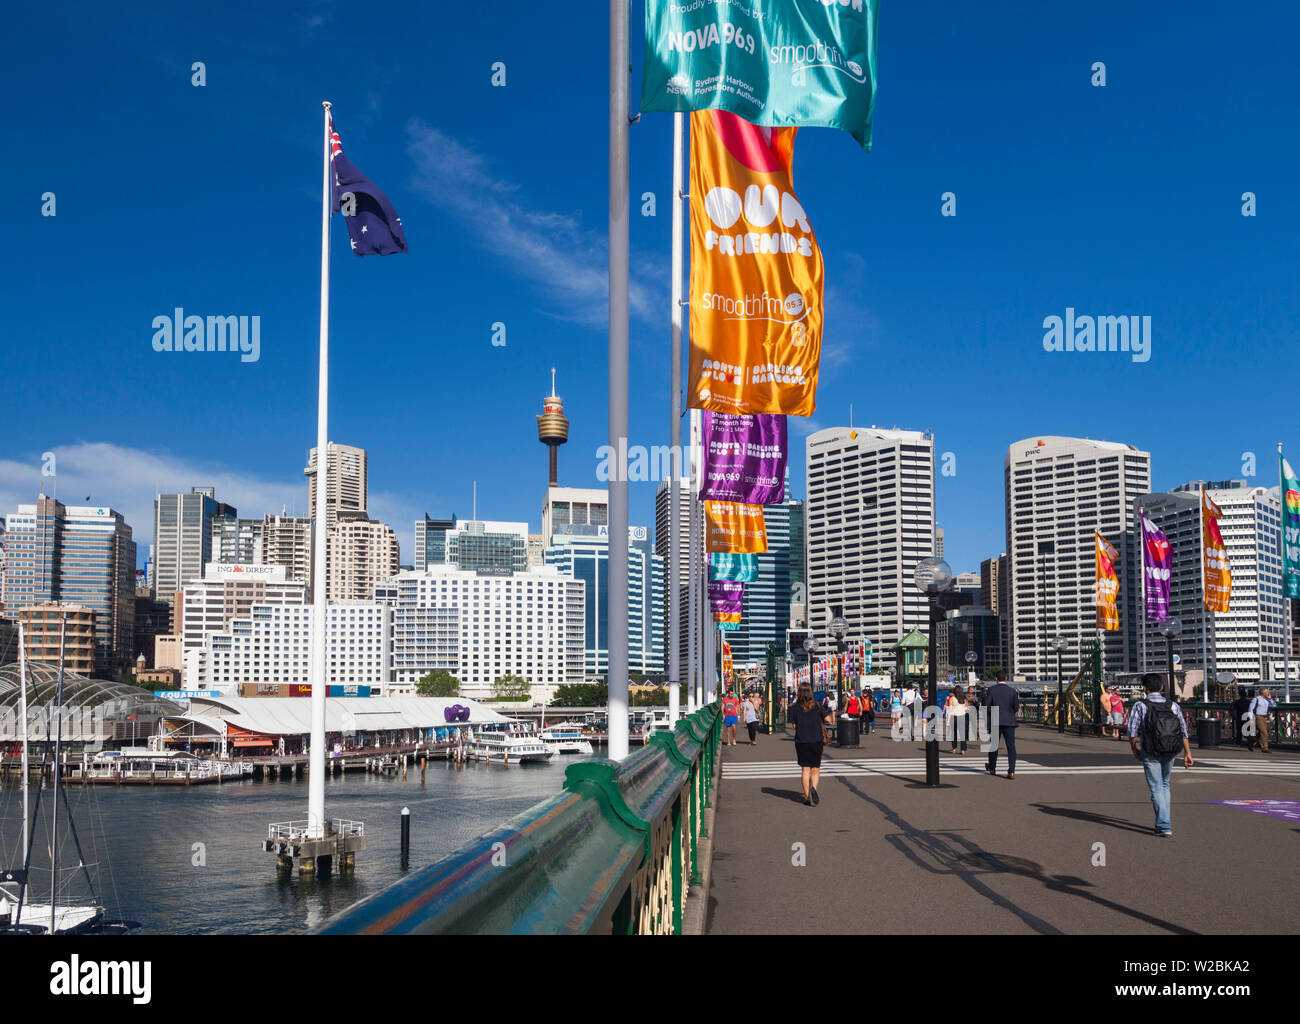 Australien, New South Wales, Sydney, NSW, CBD, Central Business District Gebäude von der Pyrmont Bridge, Darling Harbour Stockfoto